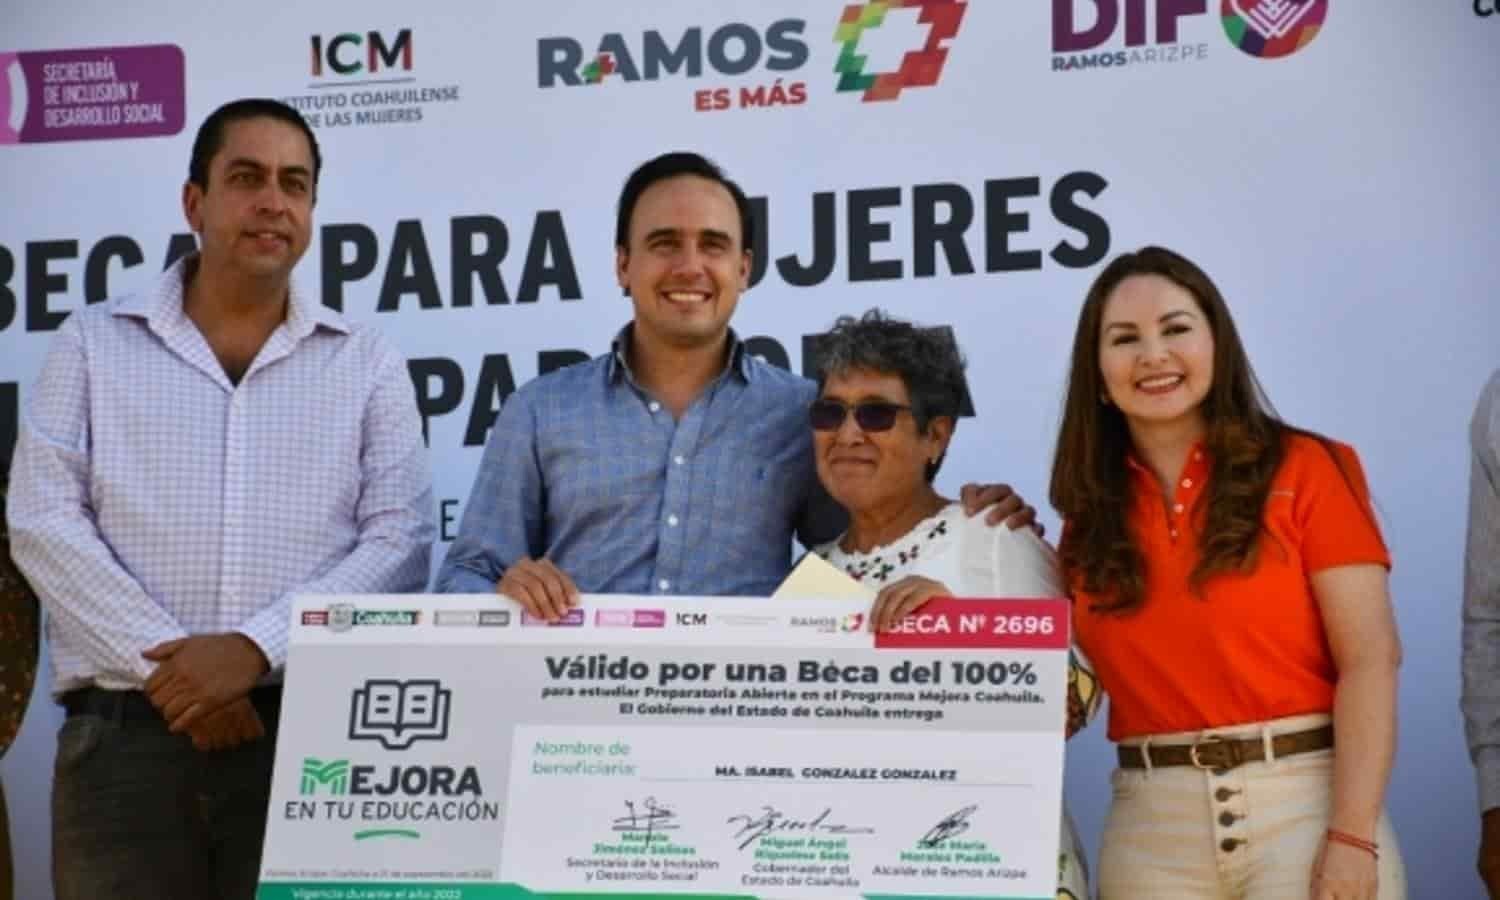 Lleva Mejora en tu Educación becas a mujeres de Ramos Arizpe